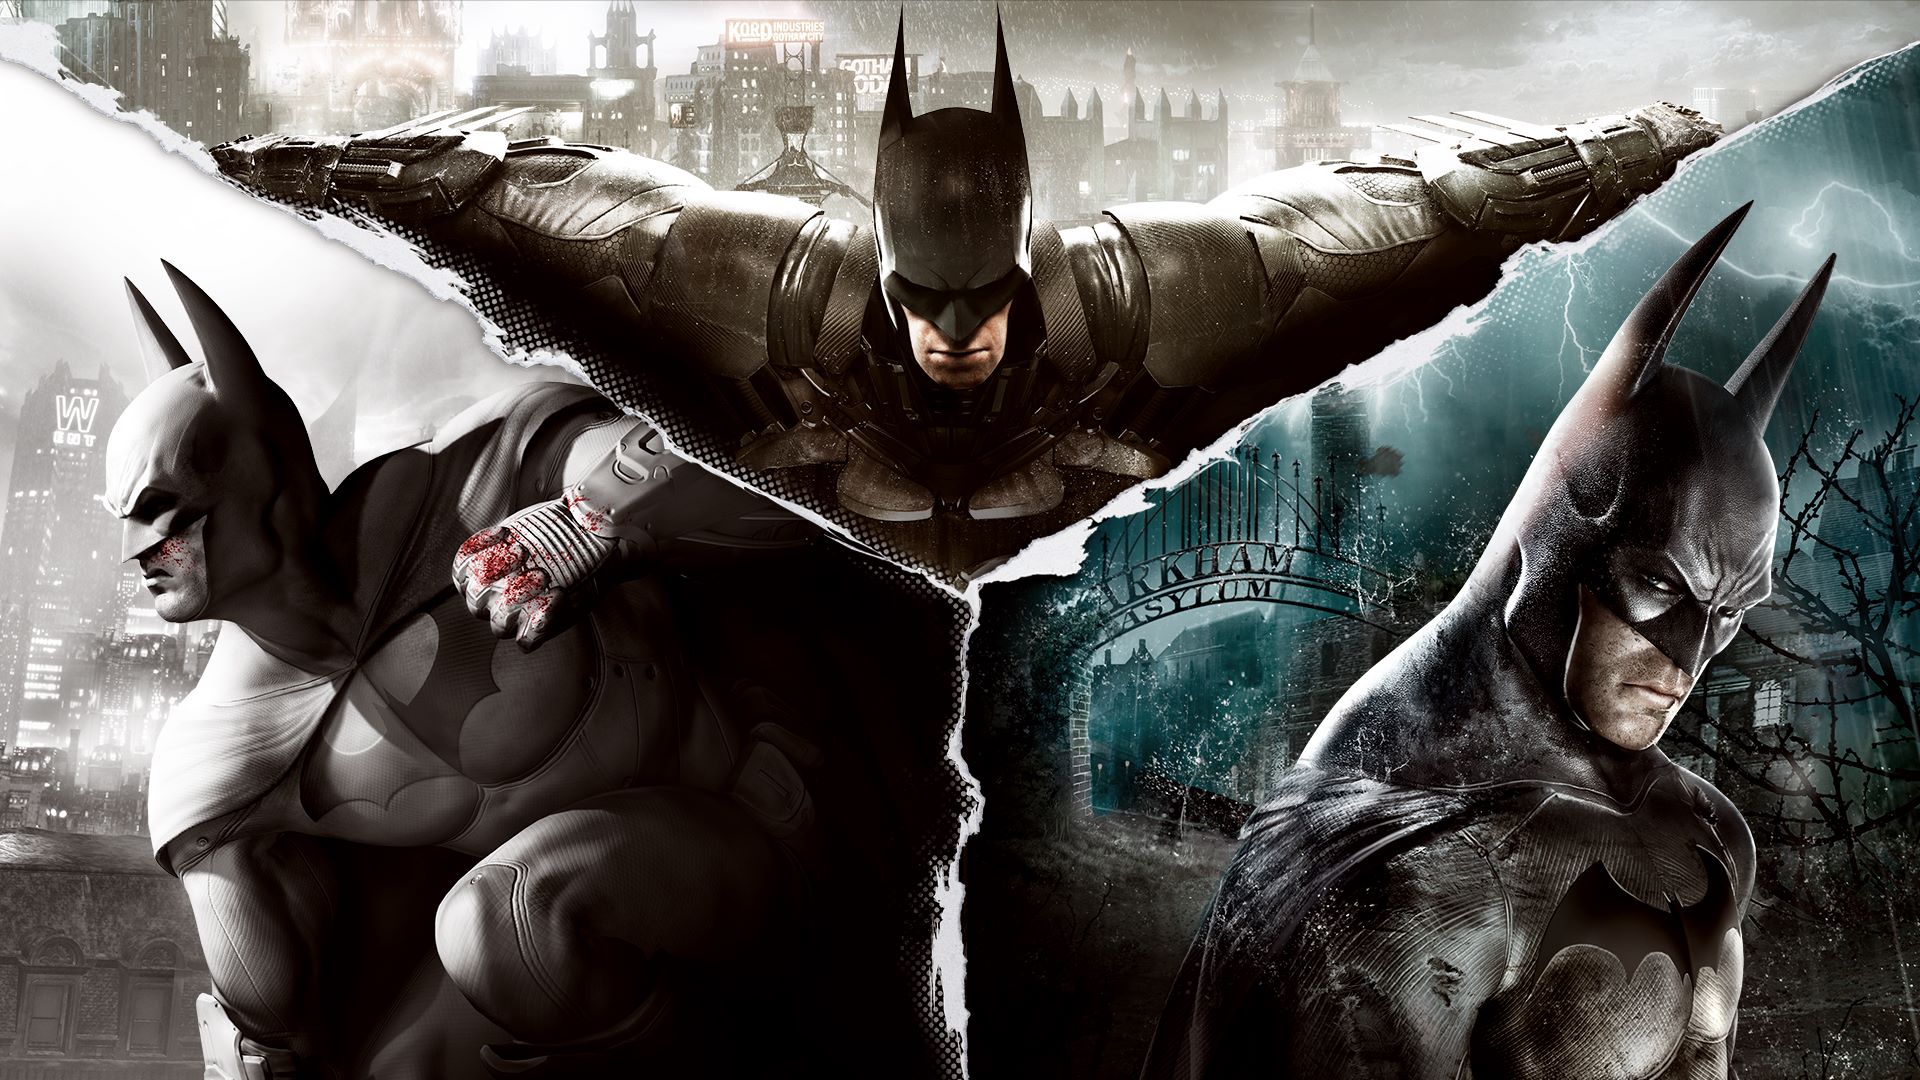 Kami menunjukkan kepada Anda detail dari sekuel Batman Arkham Knight yang dibatalkan